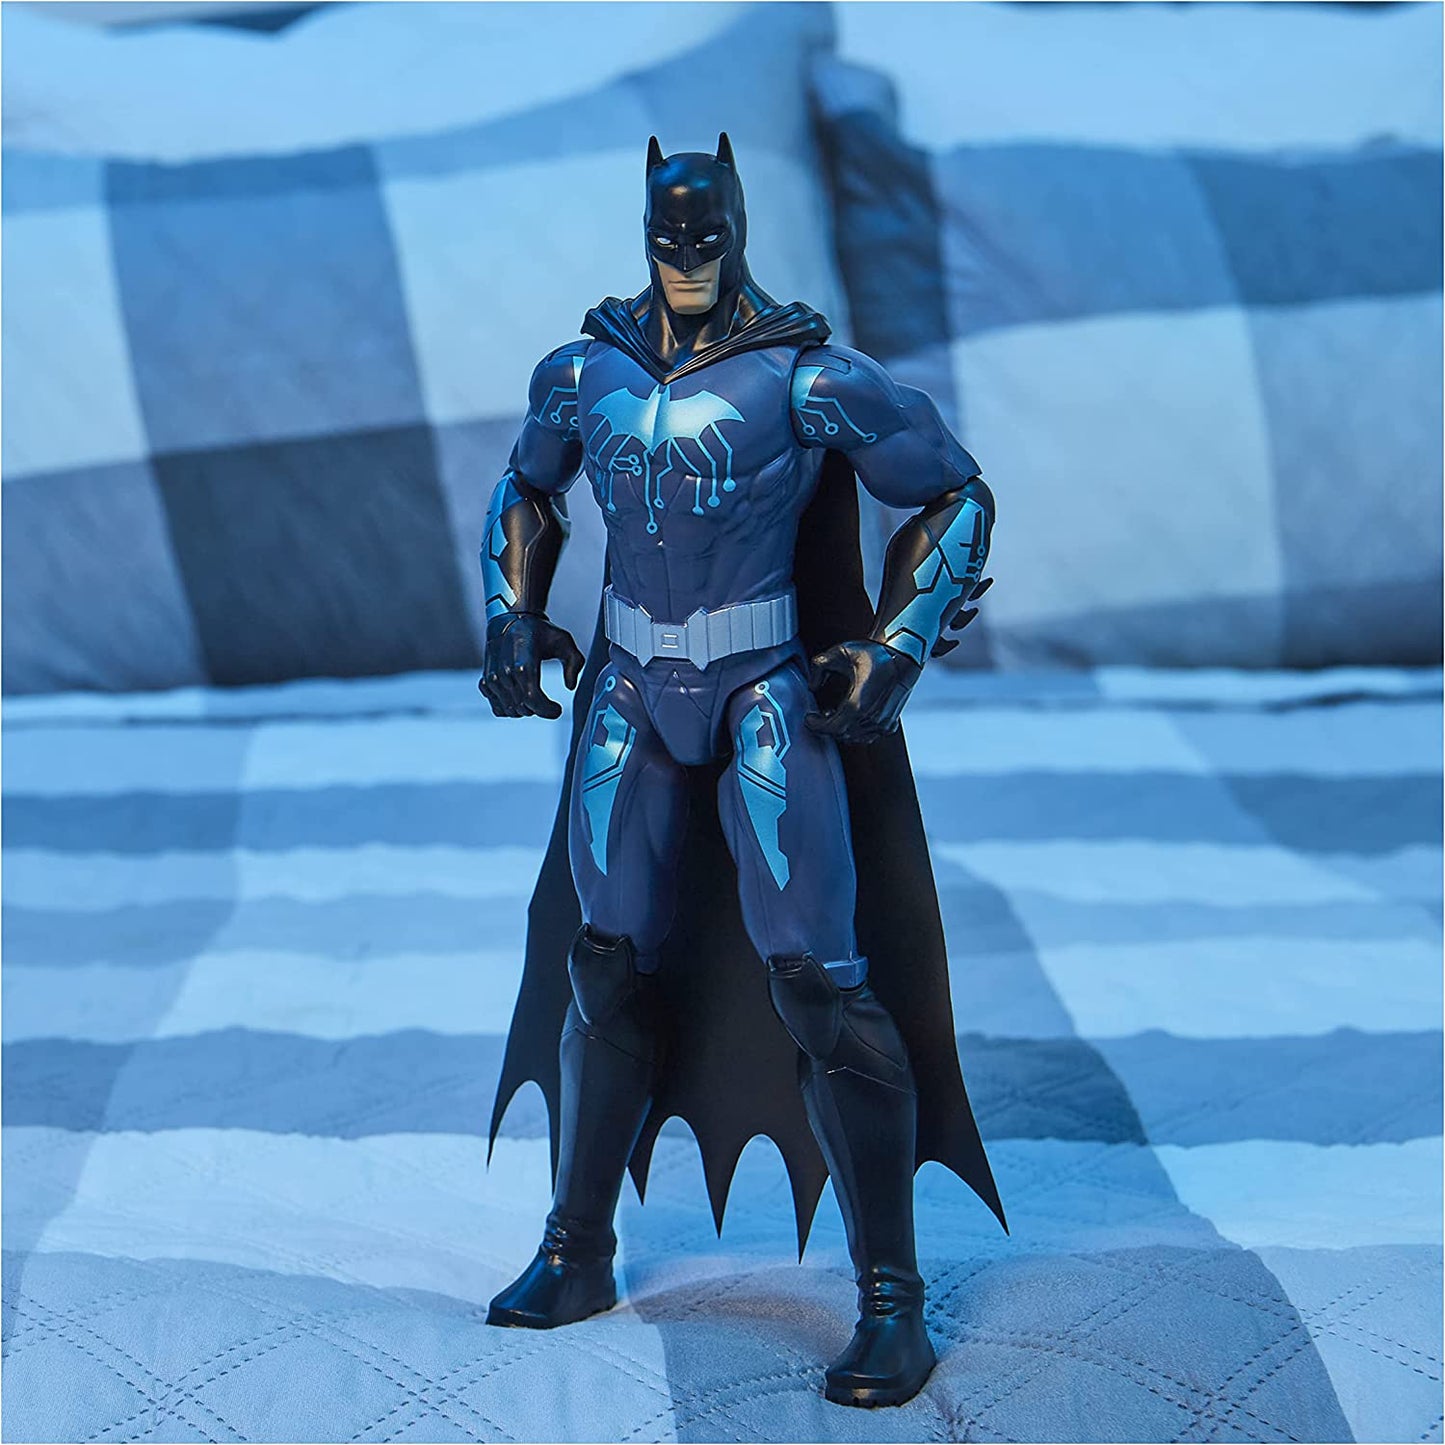 Batman 12-inch Bat-Tech Batman Action Figure (Black/Blue Suit), Kids Toys for Boys Aged 3 and up